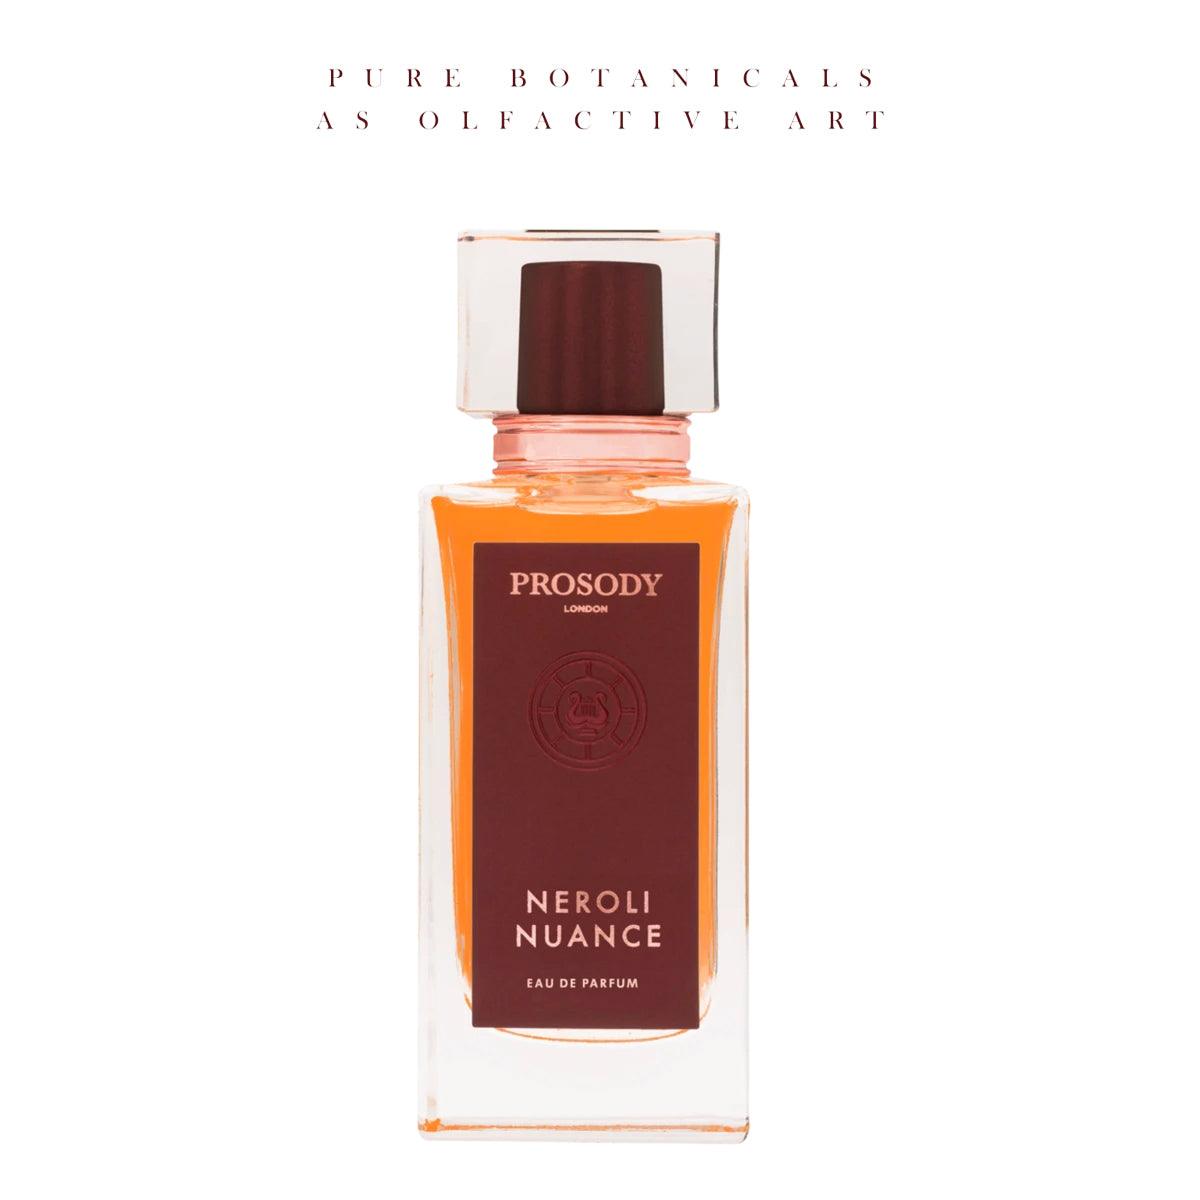 Neroli Nuance by Prosody London at Indigo Perfumery